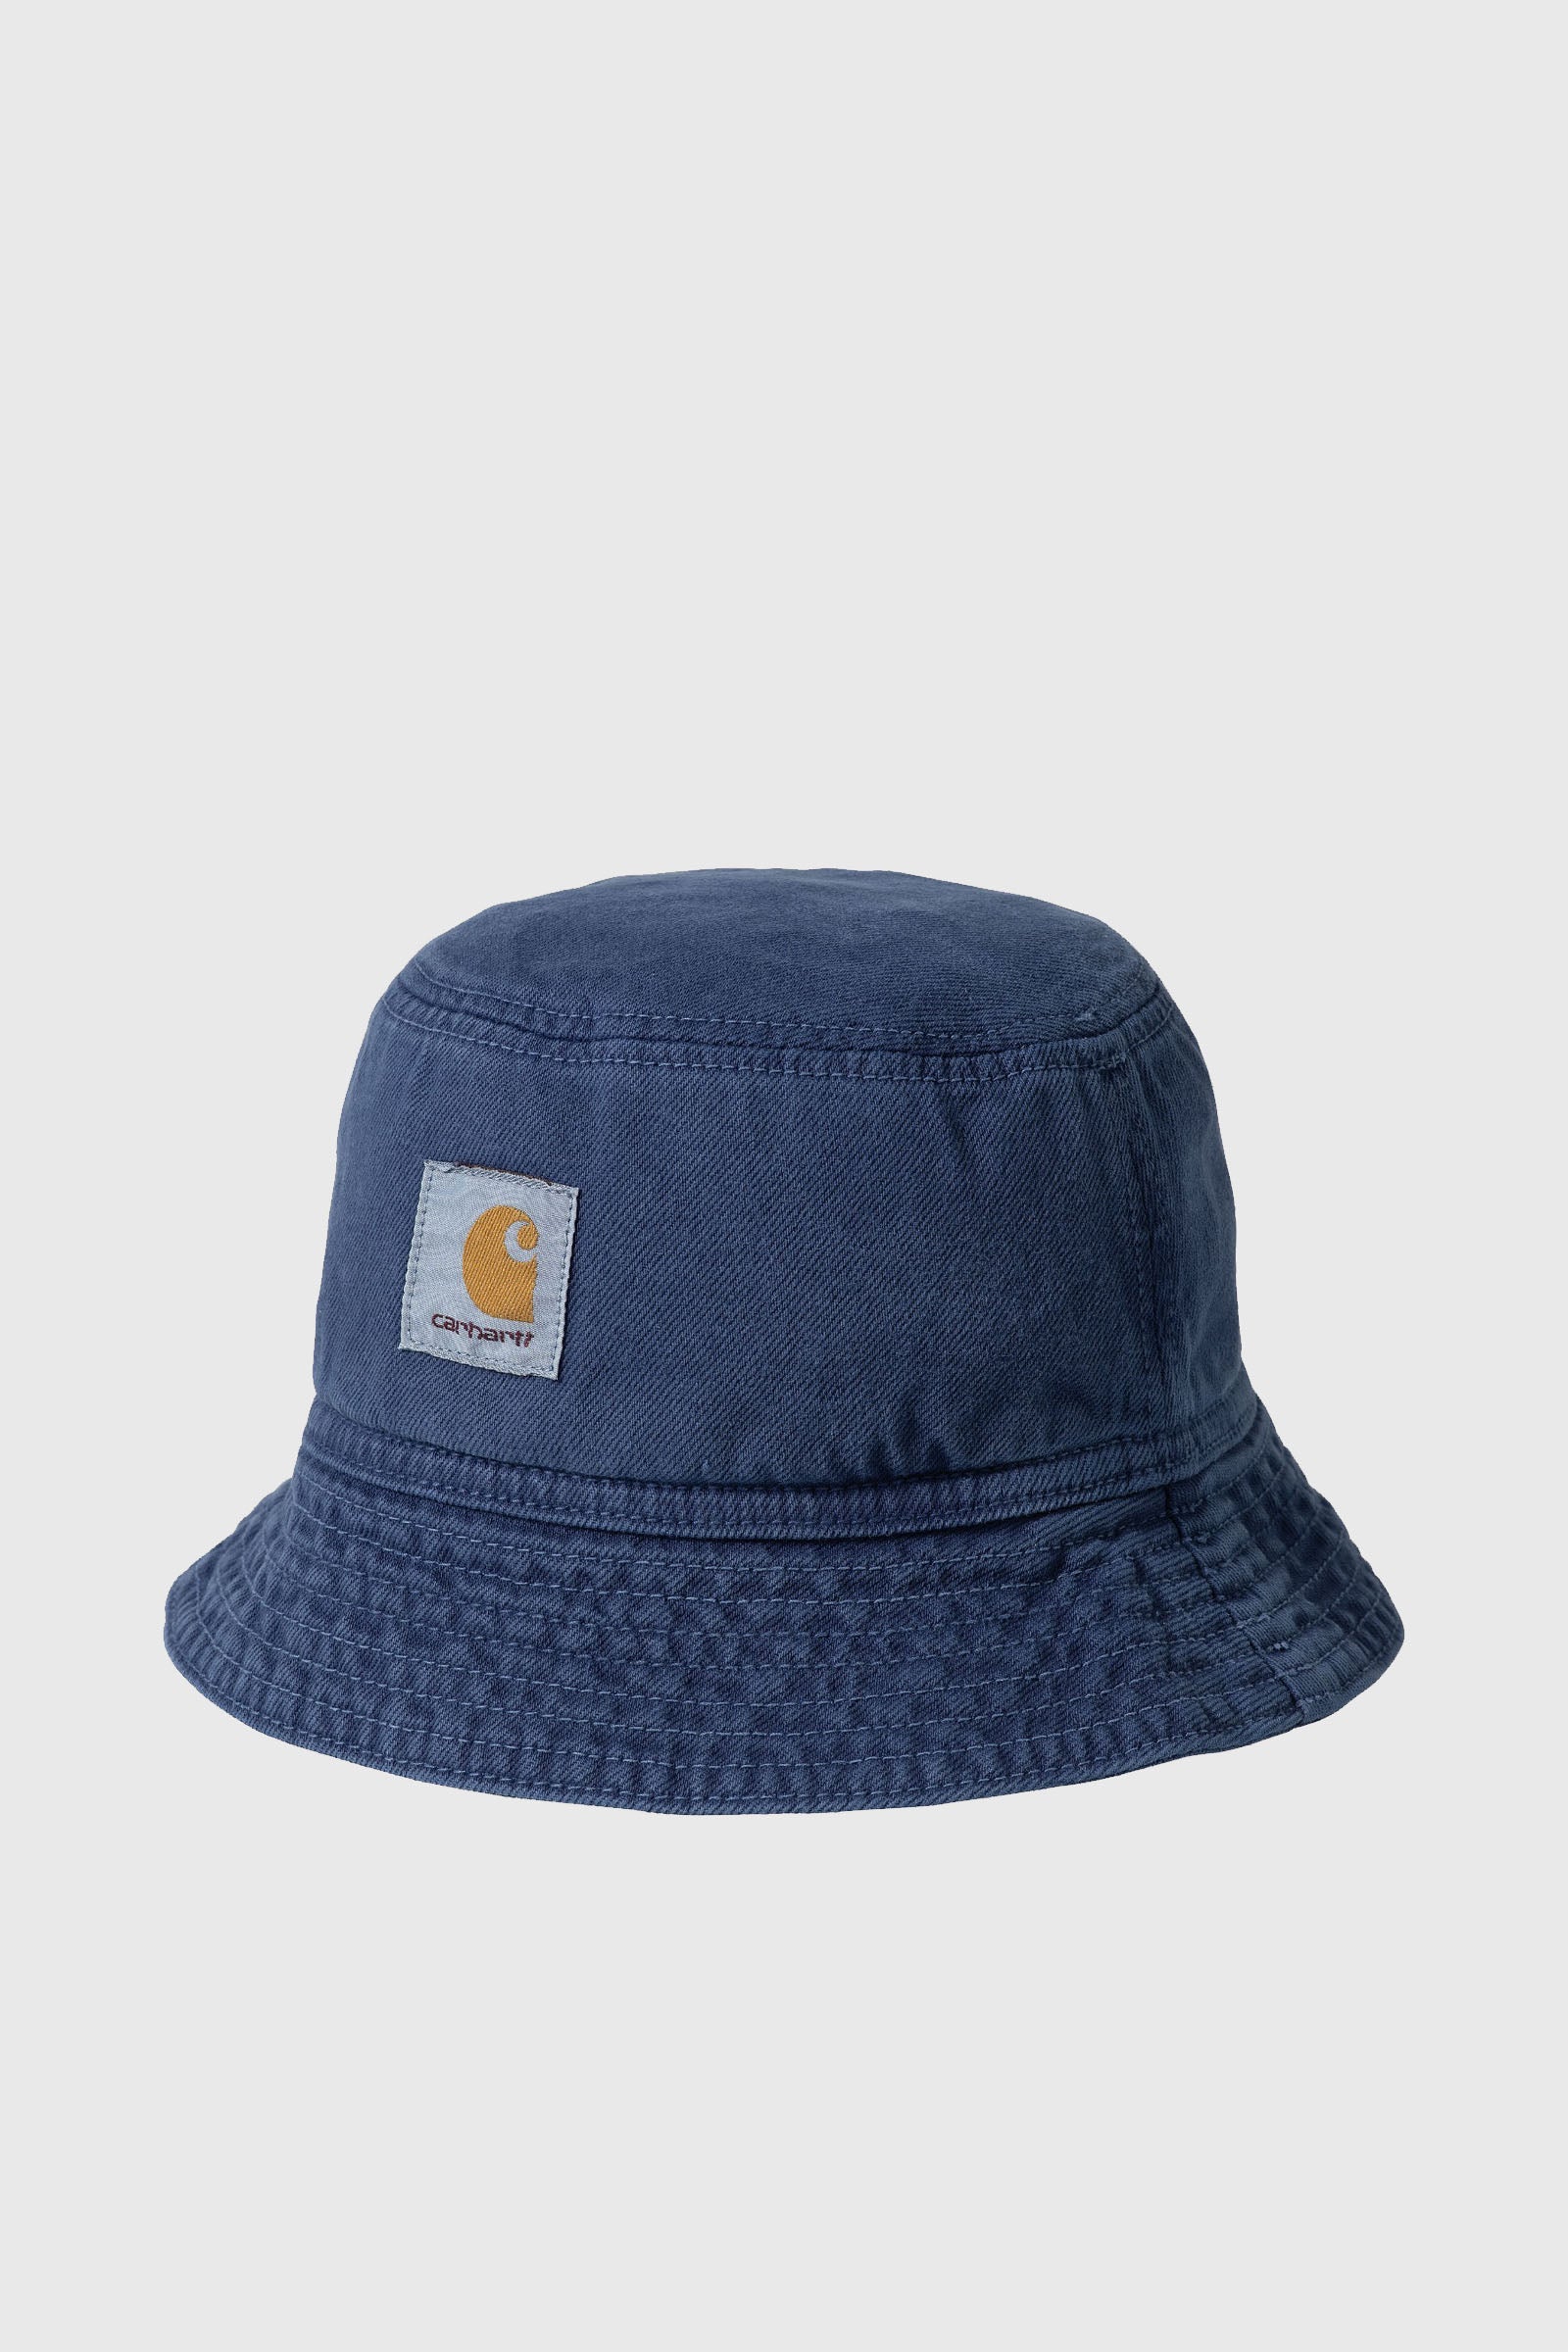 Carhartt Wip Garrison Bucket Hat Blu Medio Unisex - 1